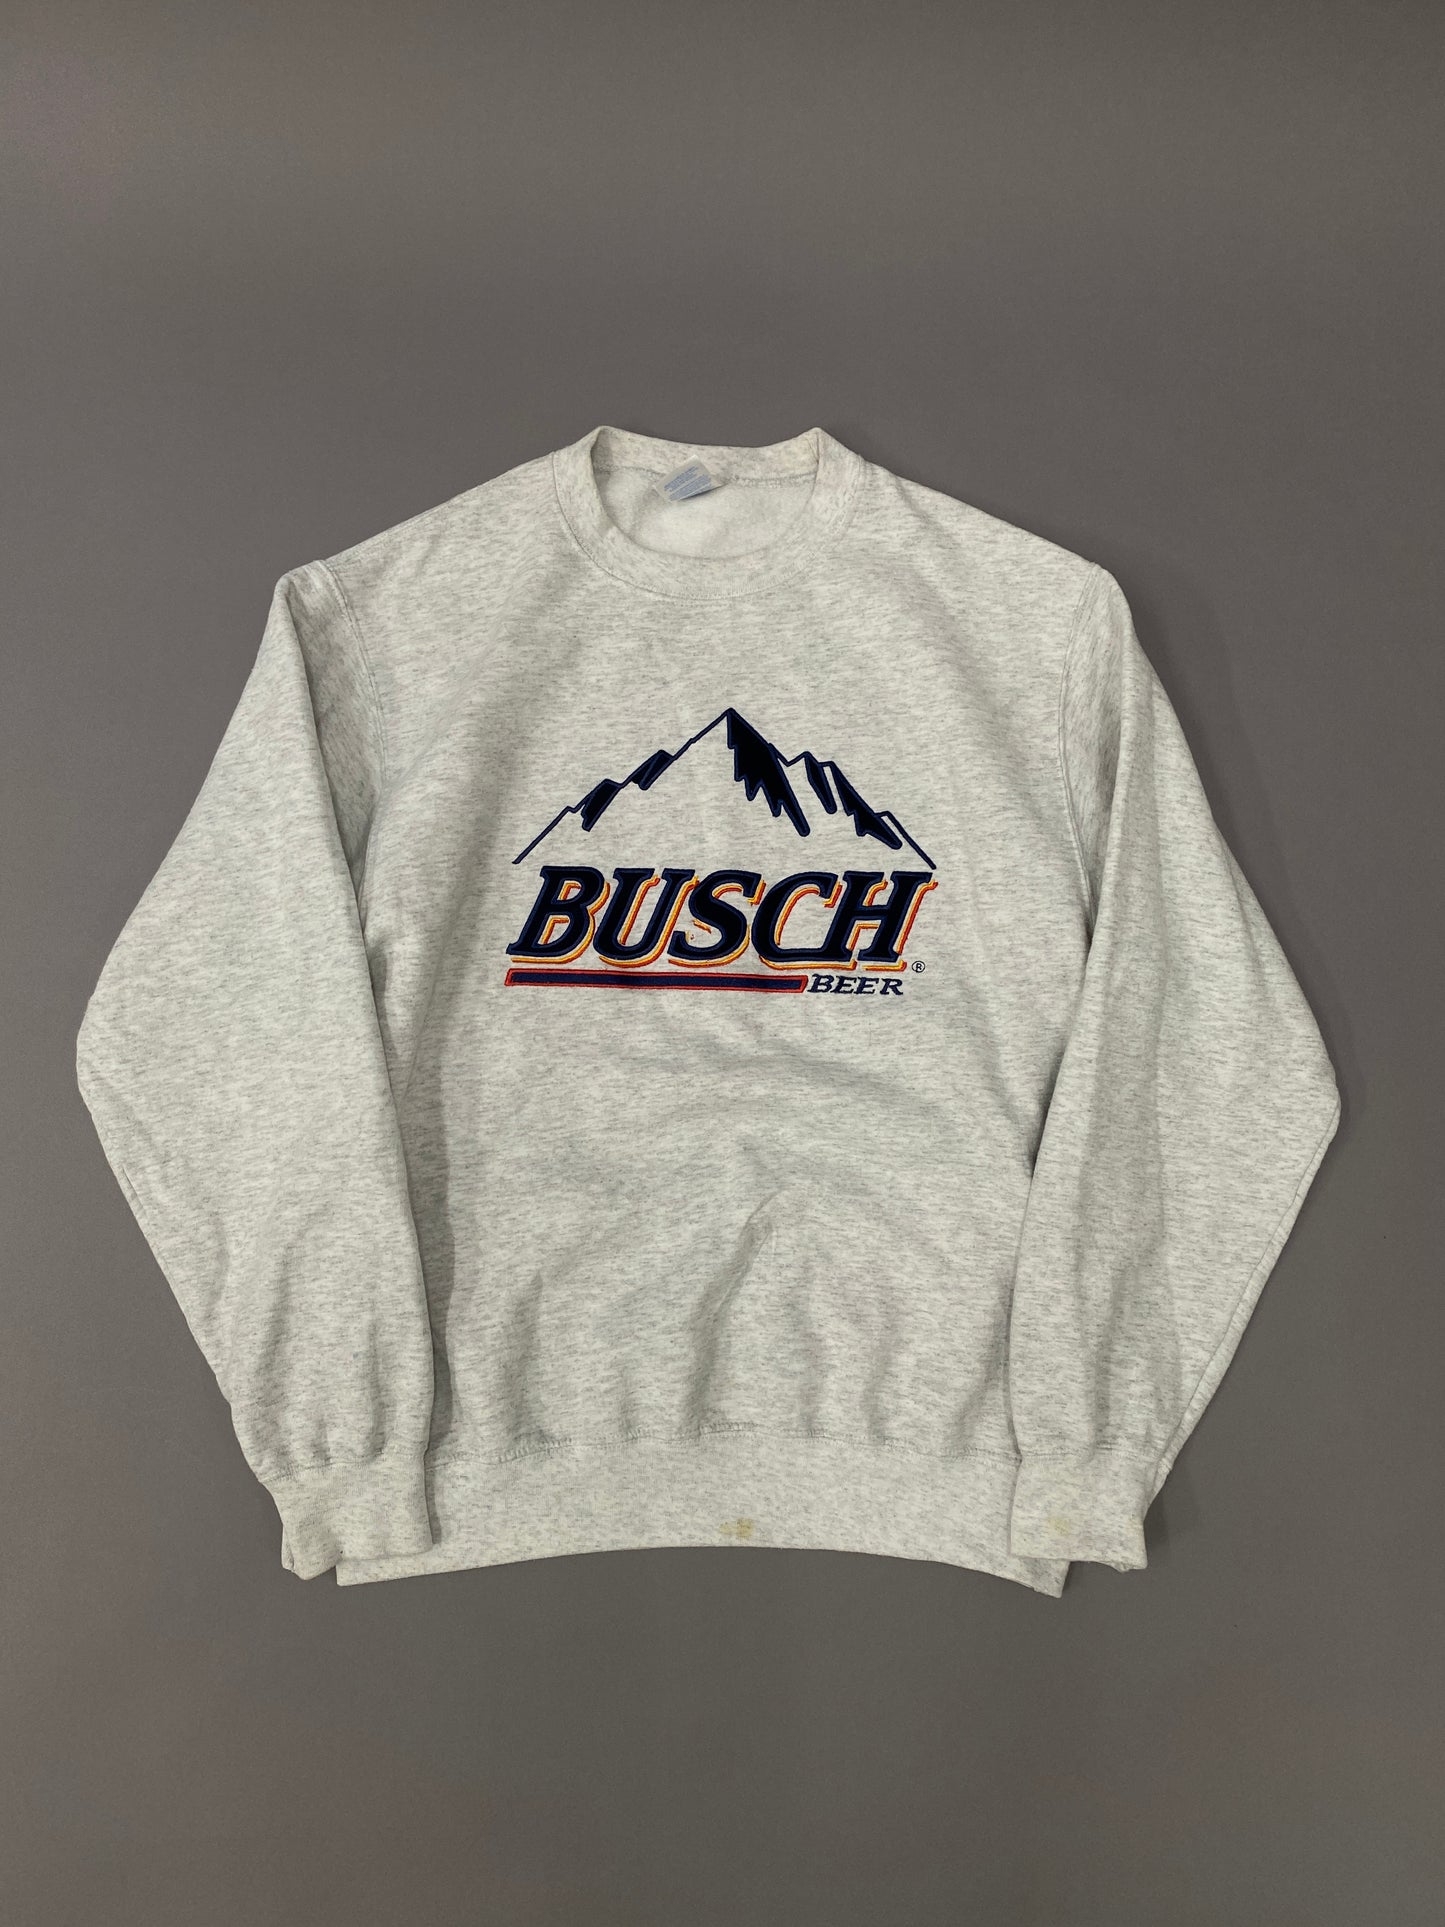 Busch sweatshirt